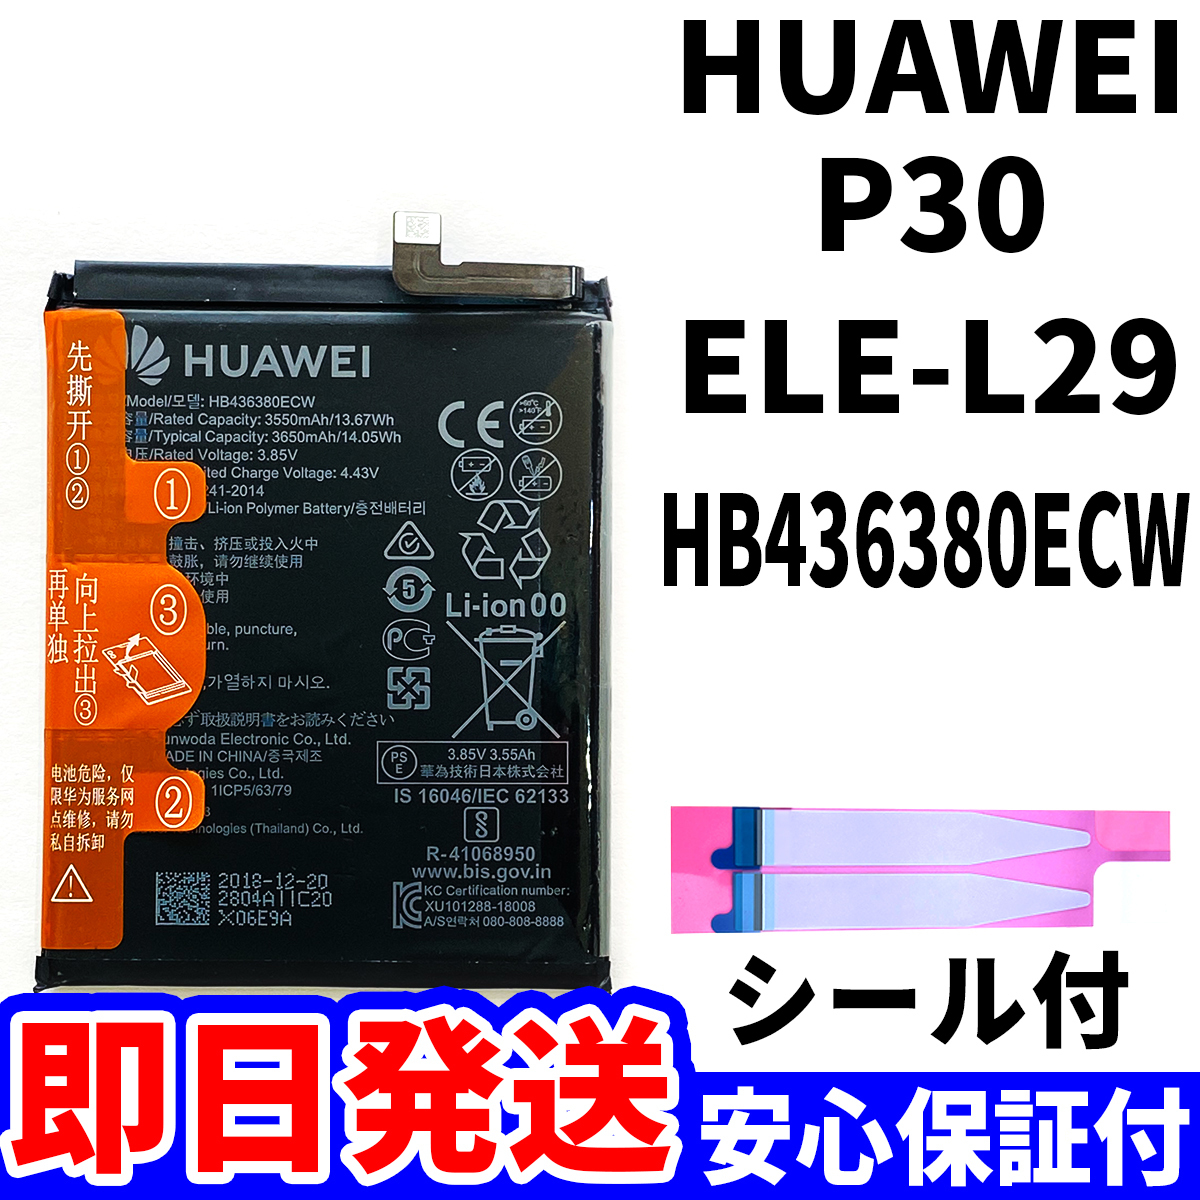  внутри страны  в тот же день   отправка ! оригинальный  равенство   новый товар !HUAWEI P30  батарея   HB436380ECW ELE-L29  аккумулятор  замена   встроенный  battery  двусторонний скотч   инструменты  нет    батарея  единый элемент  